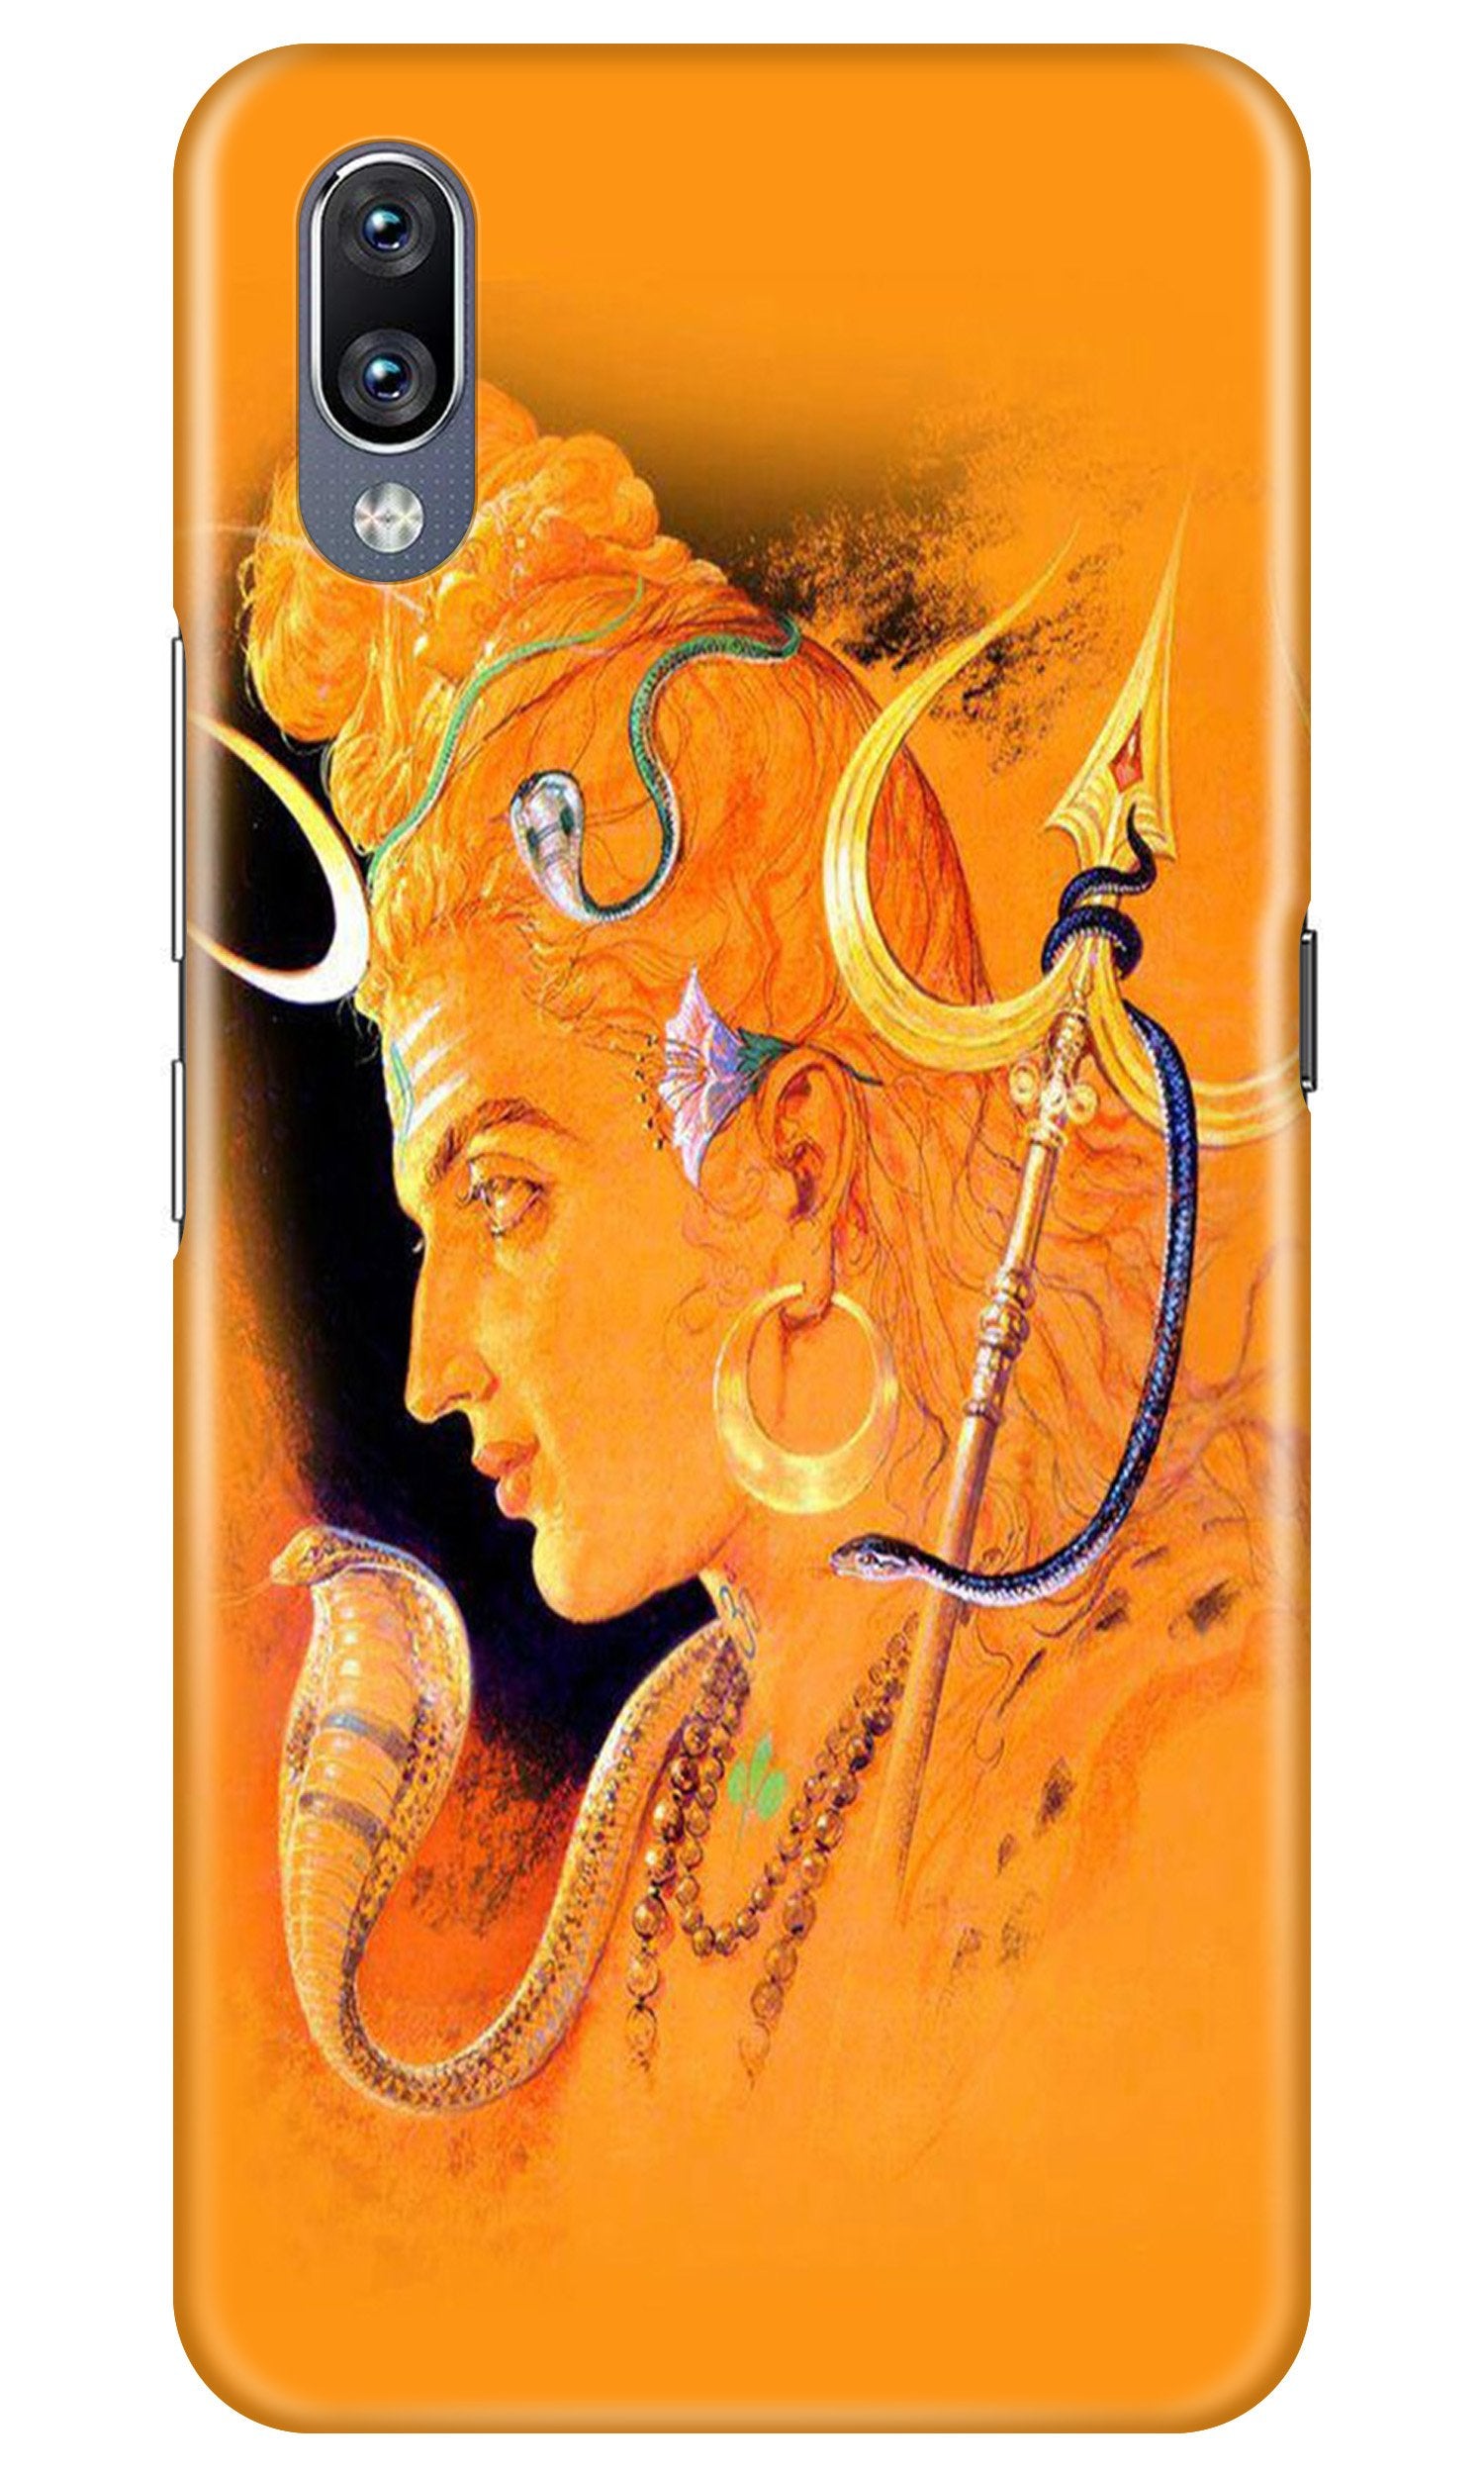 Lord Shiva Case for Vivo V11 Pro (Design No. 293)